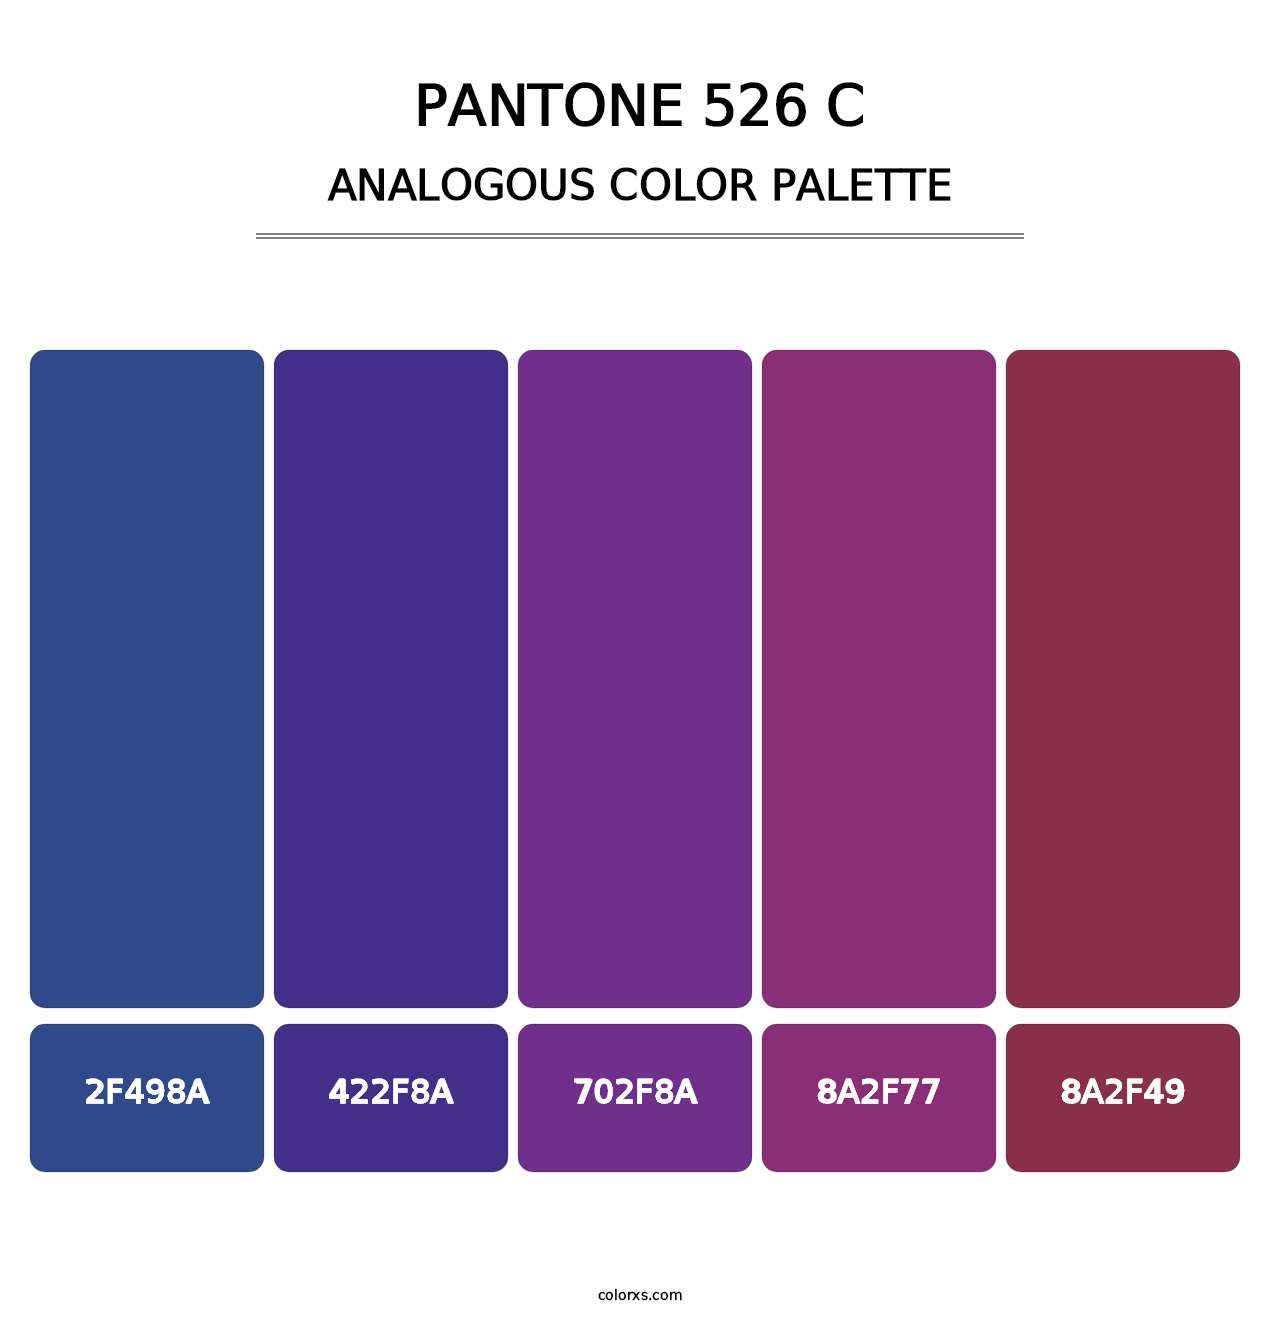 PANTONE 526 C - Analogous Color Palette